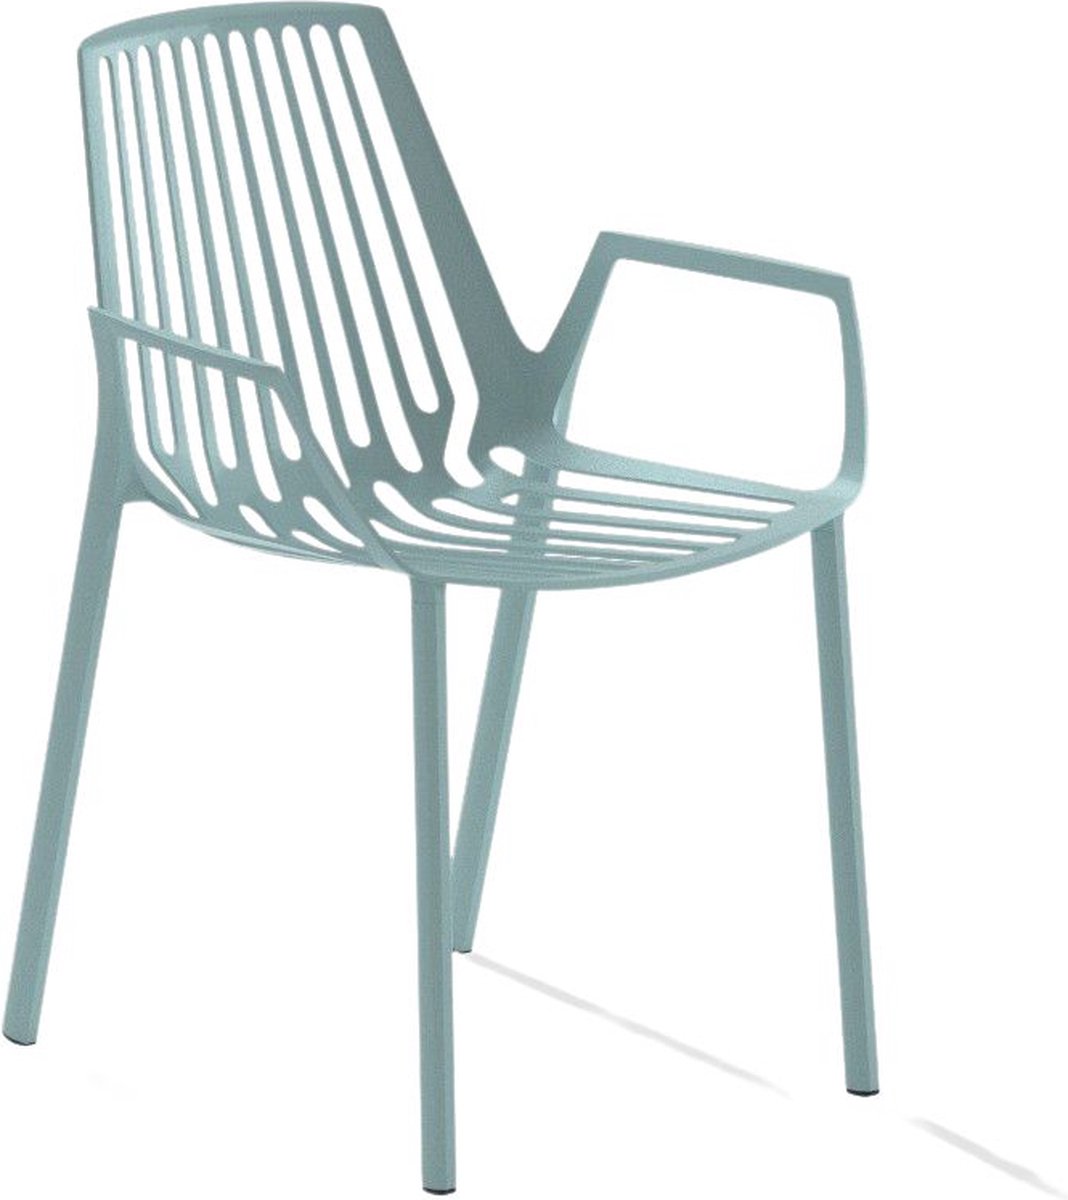 Rion fauteuil - pastelblauw